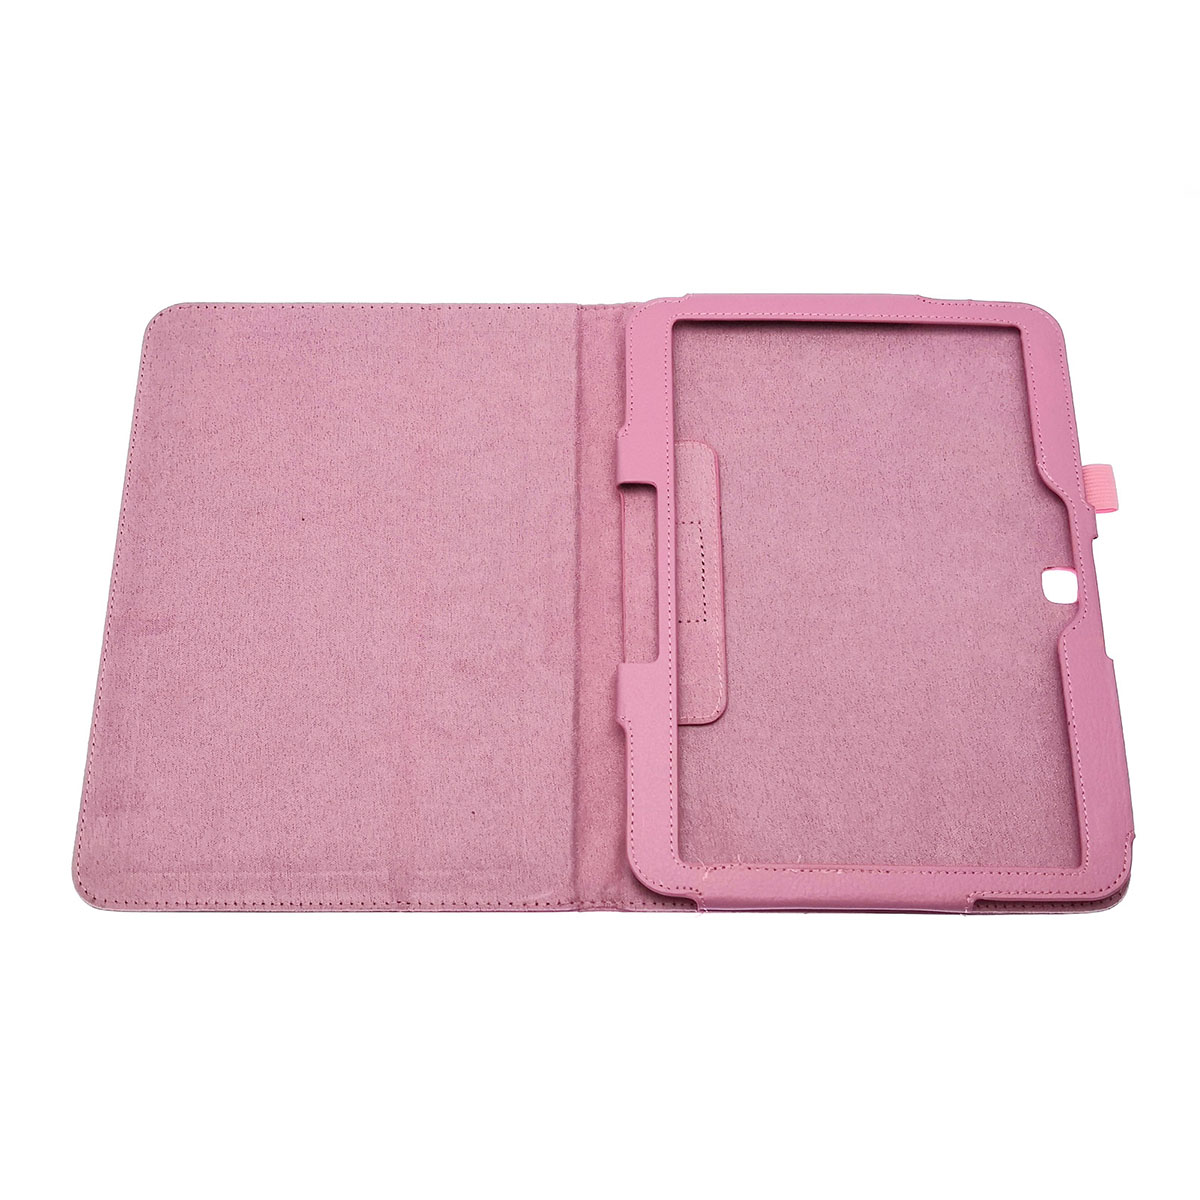 Чехол книжка для SAMSUNG Galaxy Tab 4 10.1 (SM-T530), экокожа, цвет розовый.